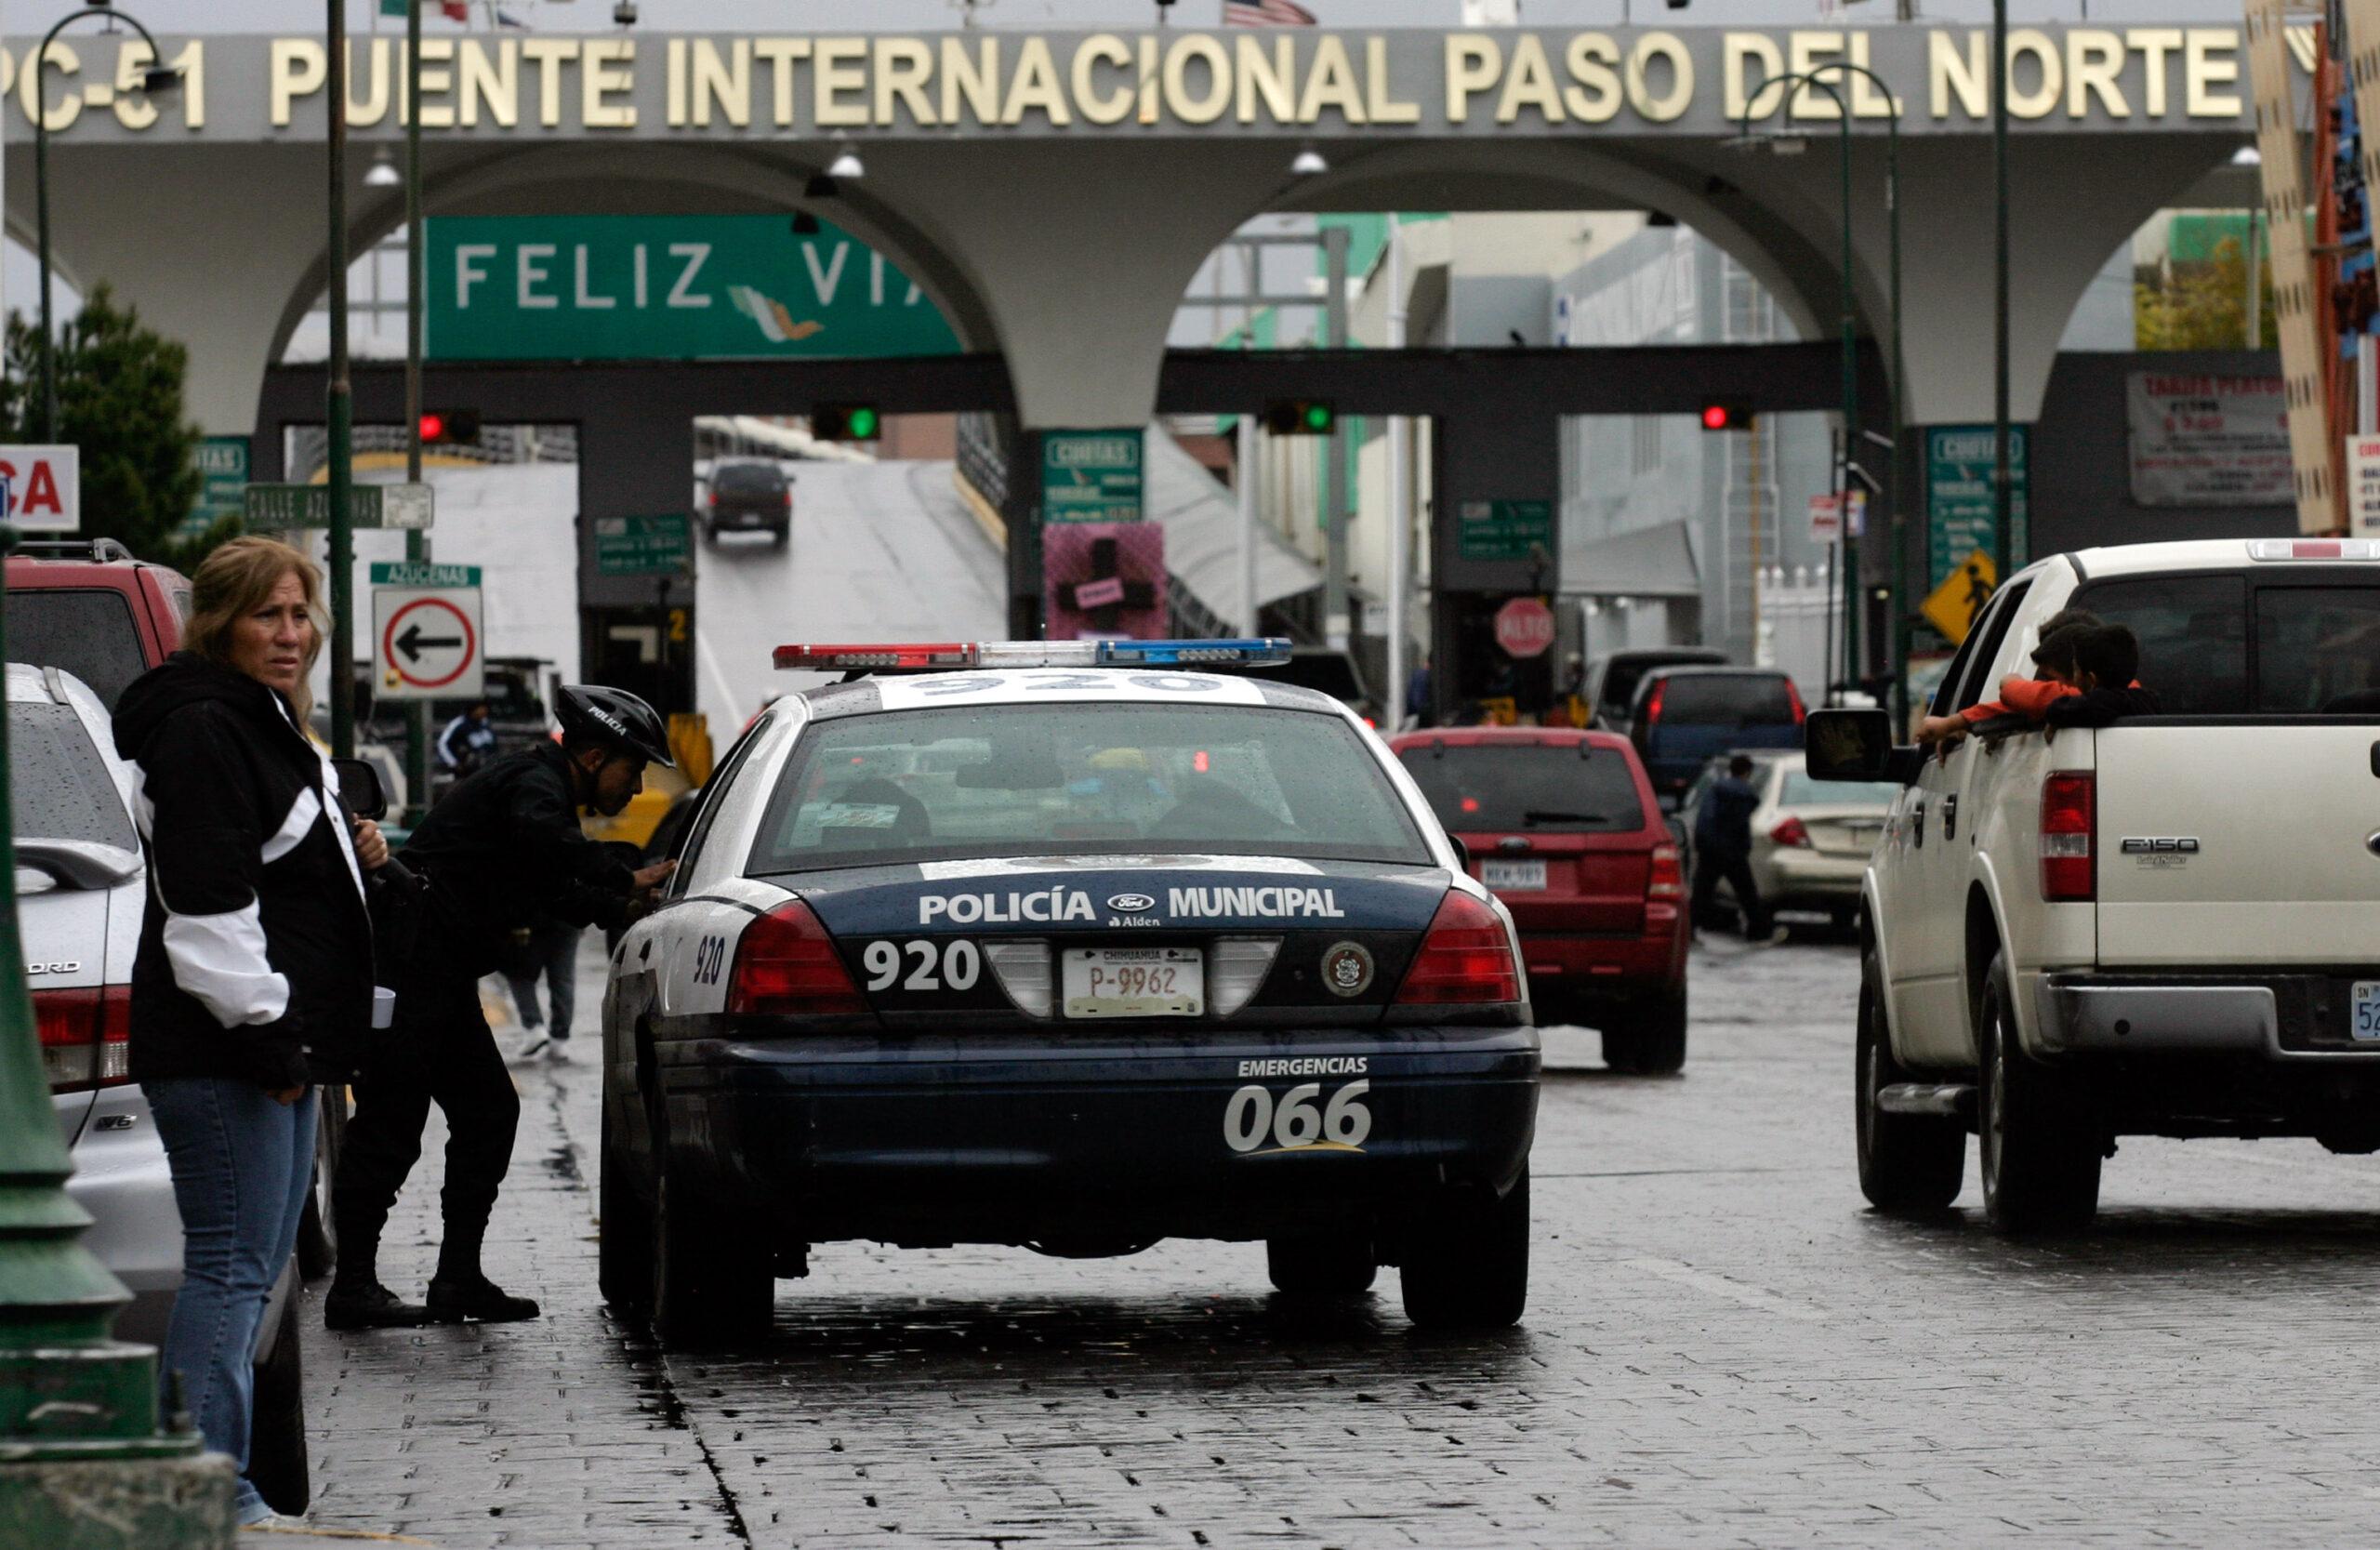 EU reduce mil 750 inspectores en frontera con México por recortes